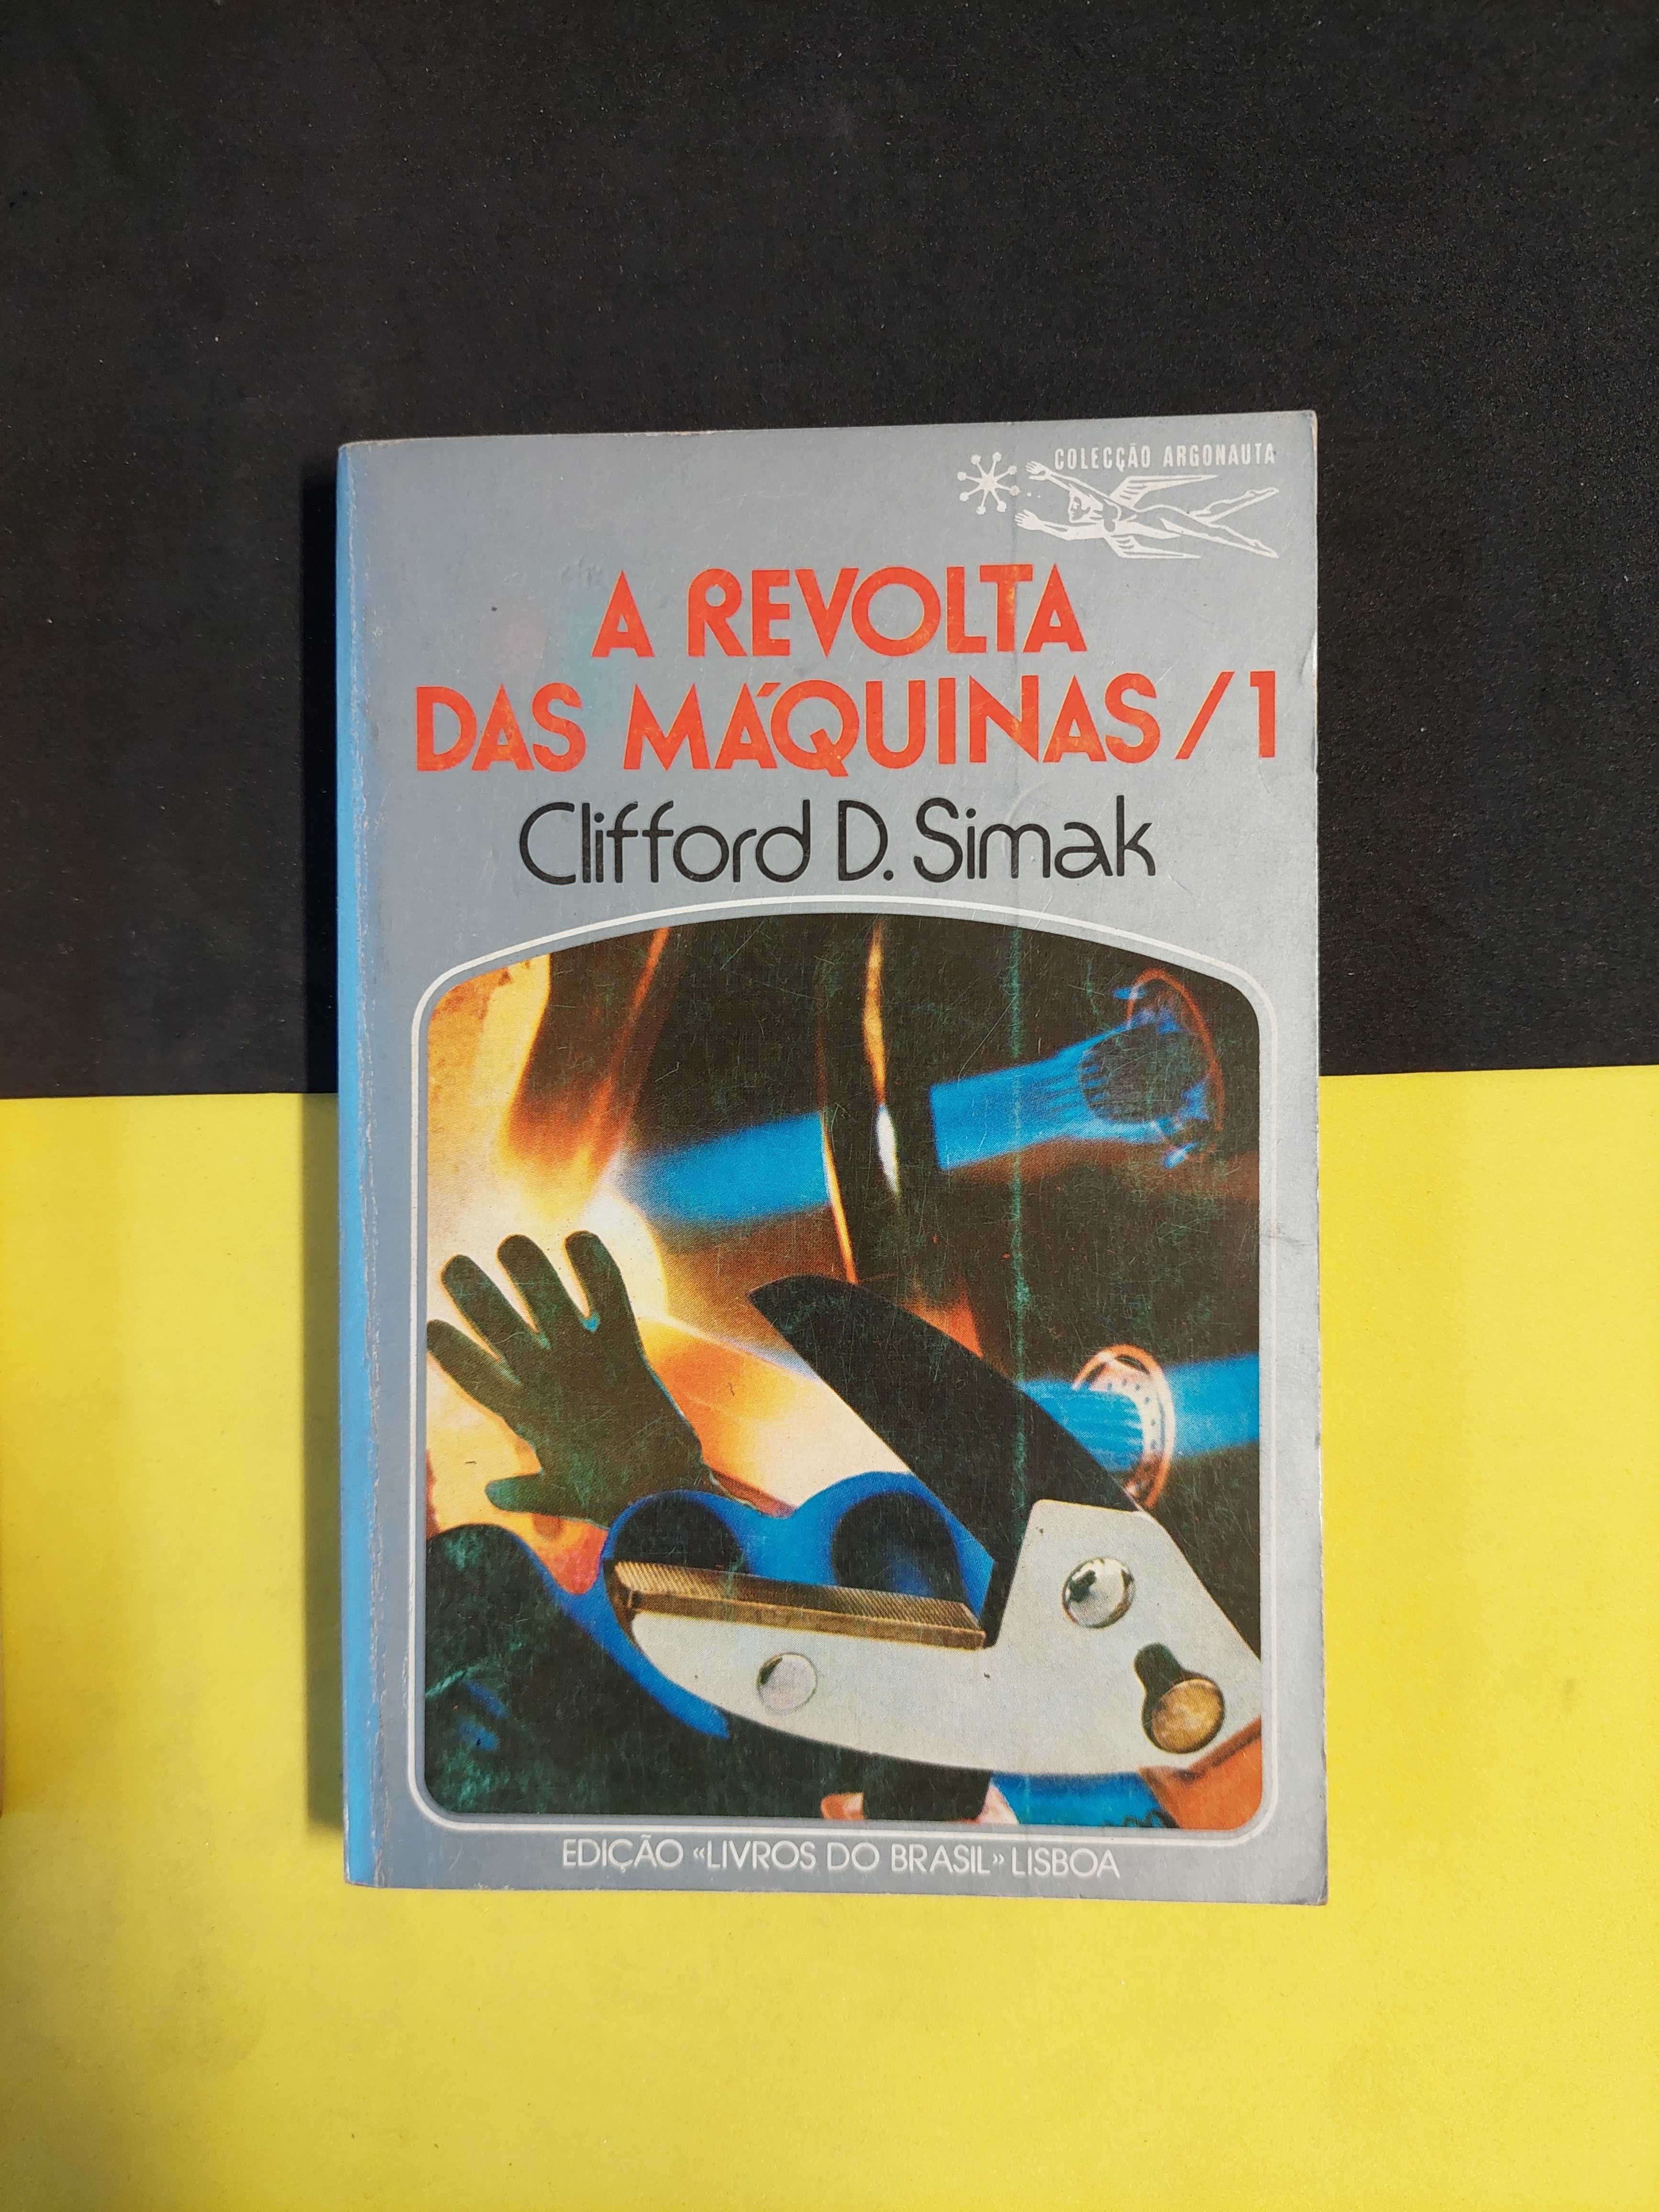 Clifford D. Simak - A revolta das máquinas vol 1, 2